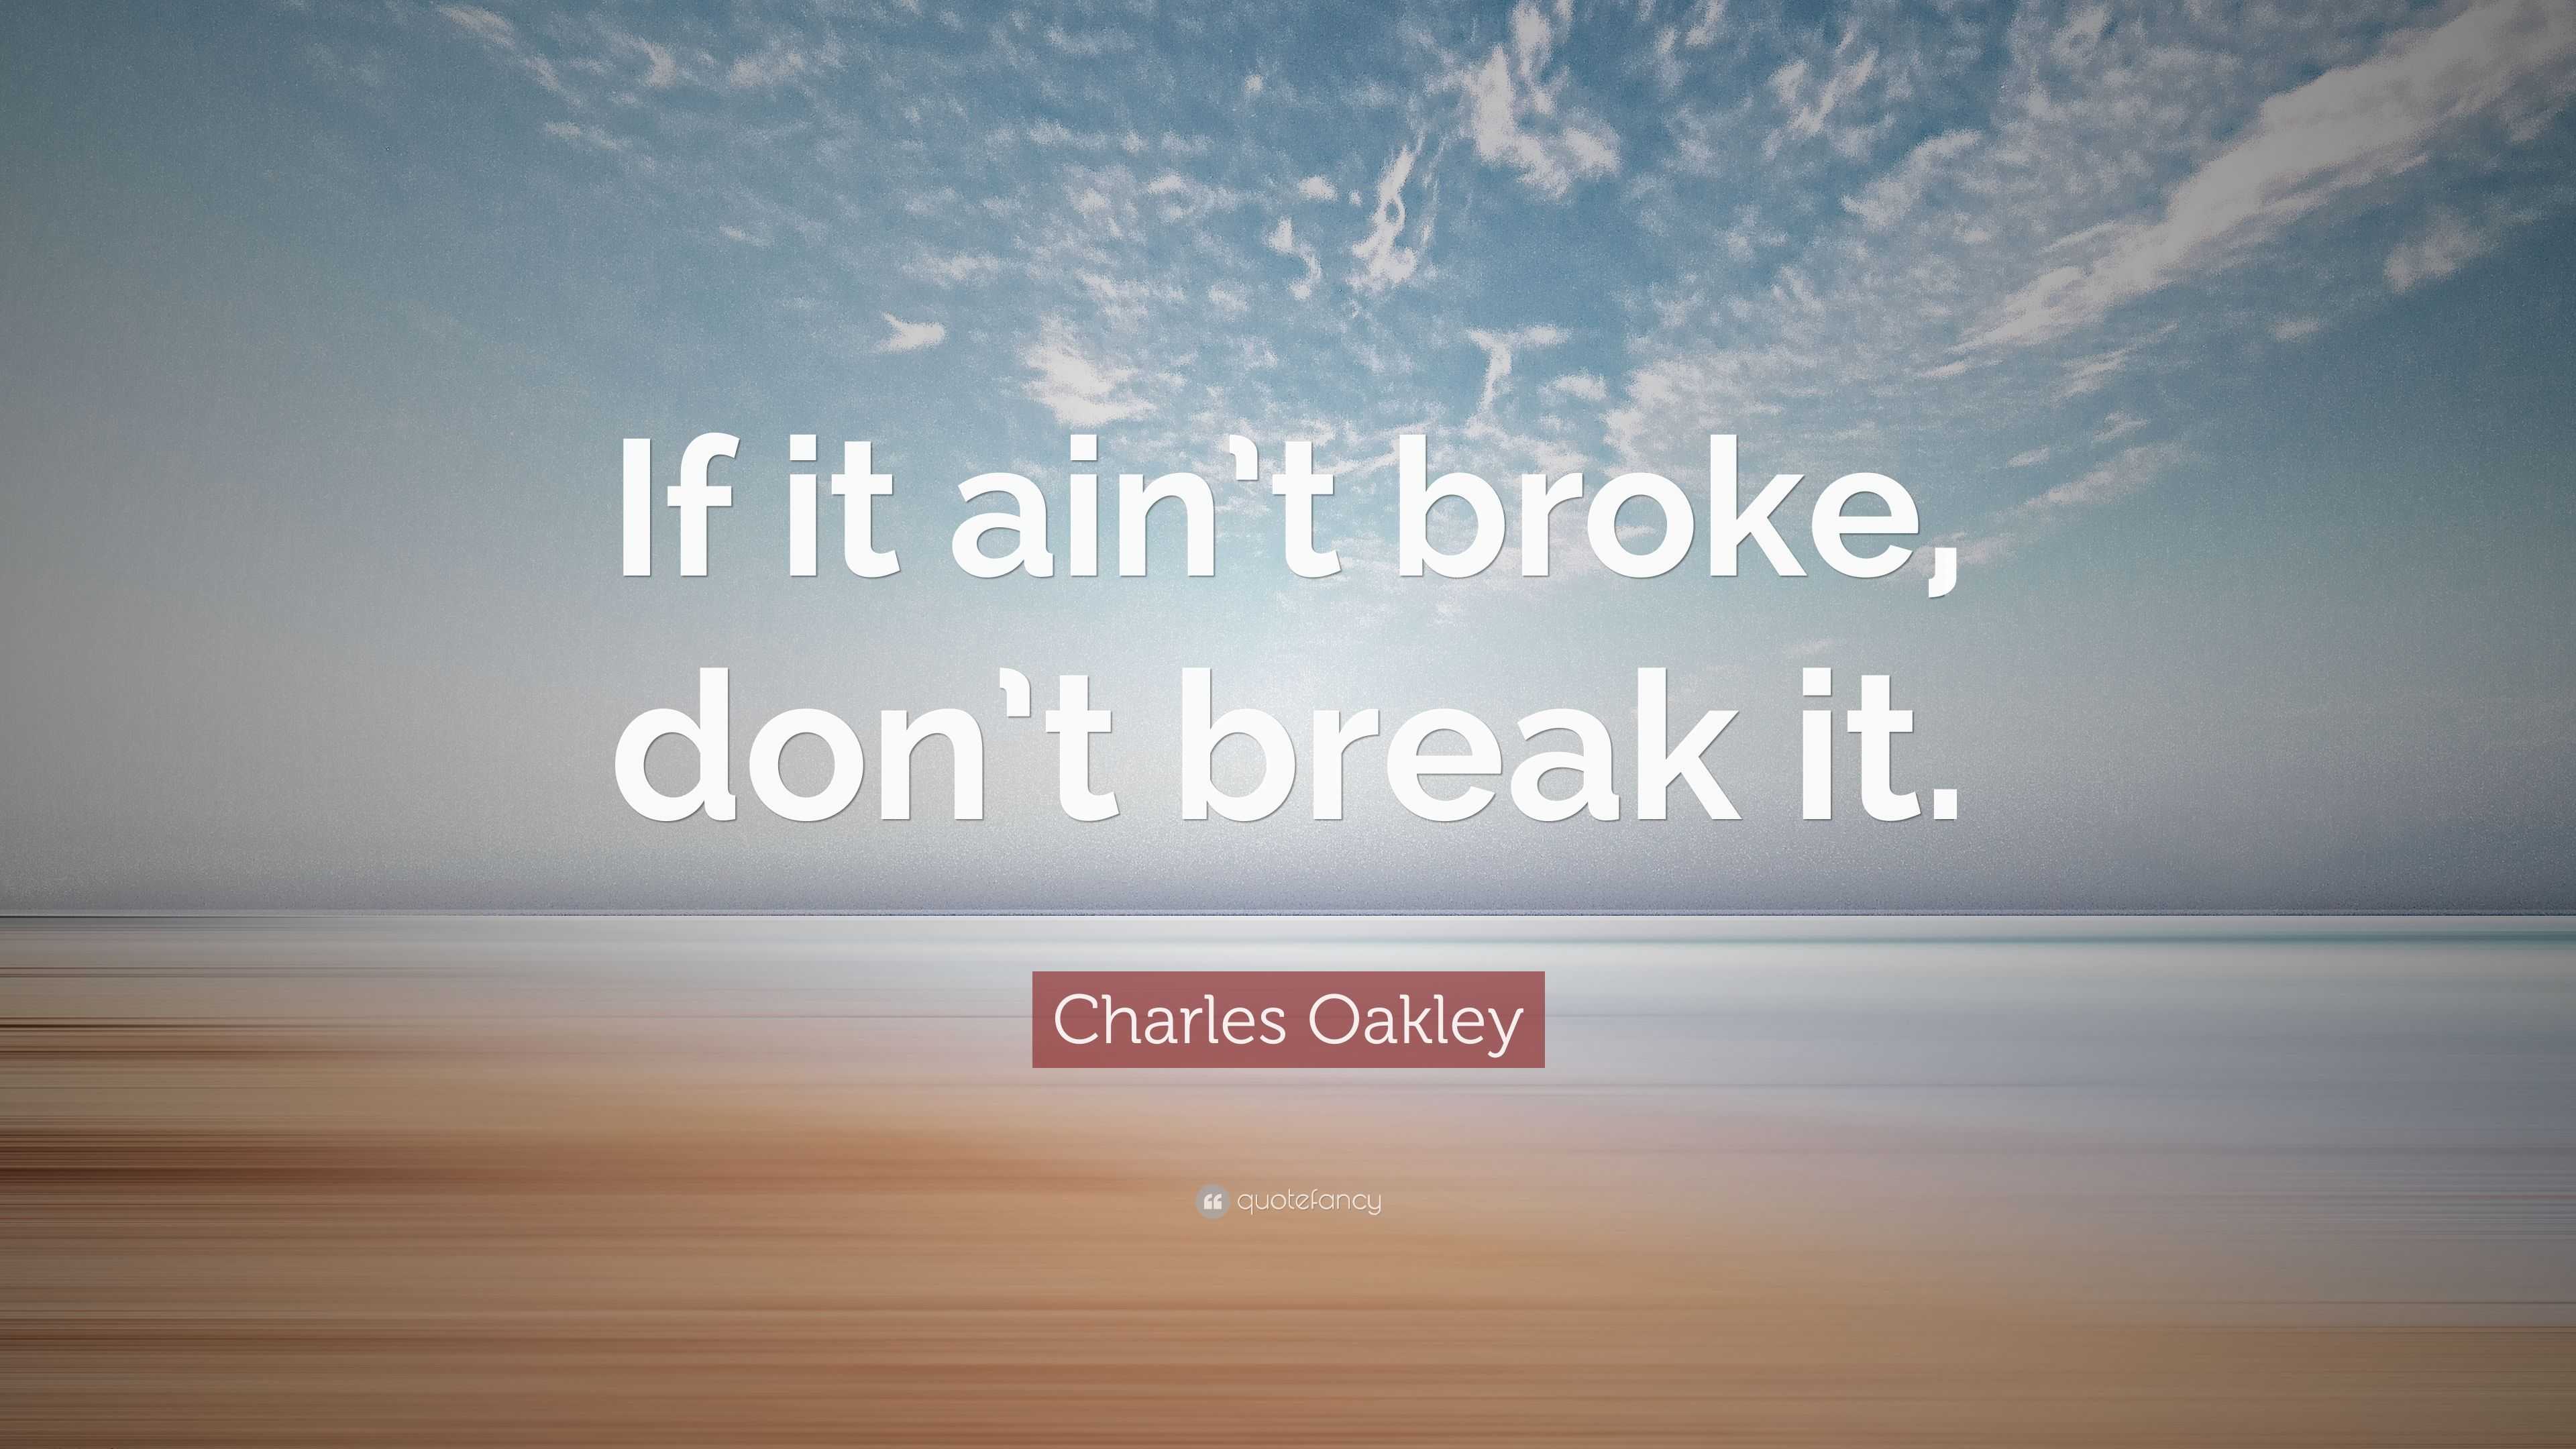 Charles Oakley Quote: “If it ain't broke, don't break it.”